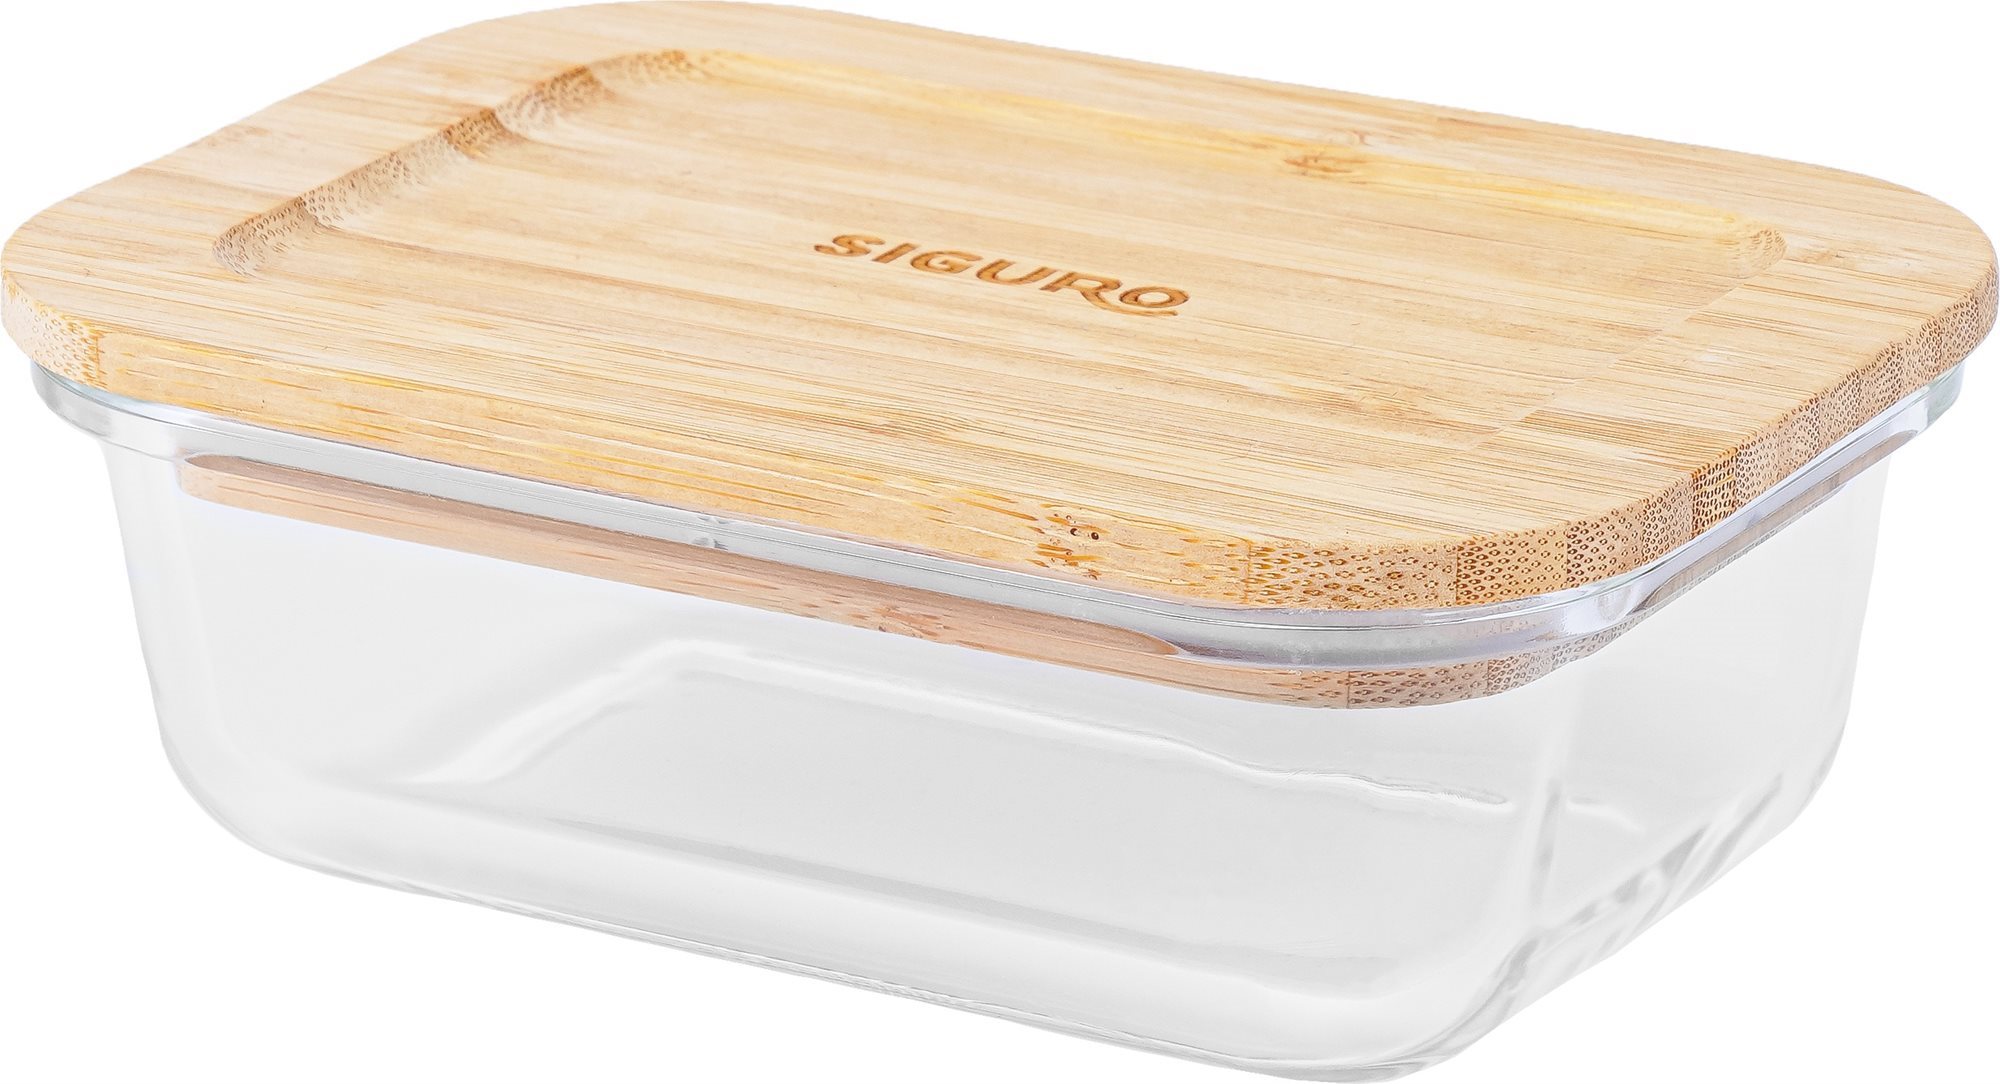 Tárolóedény Siguro Glass Seal Bamboo élelmiszertároló edény 0